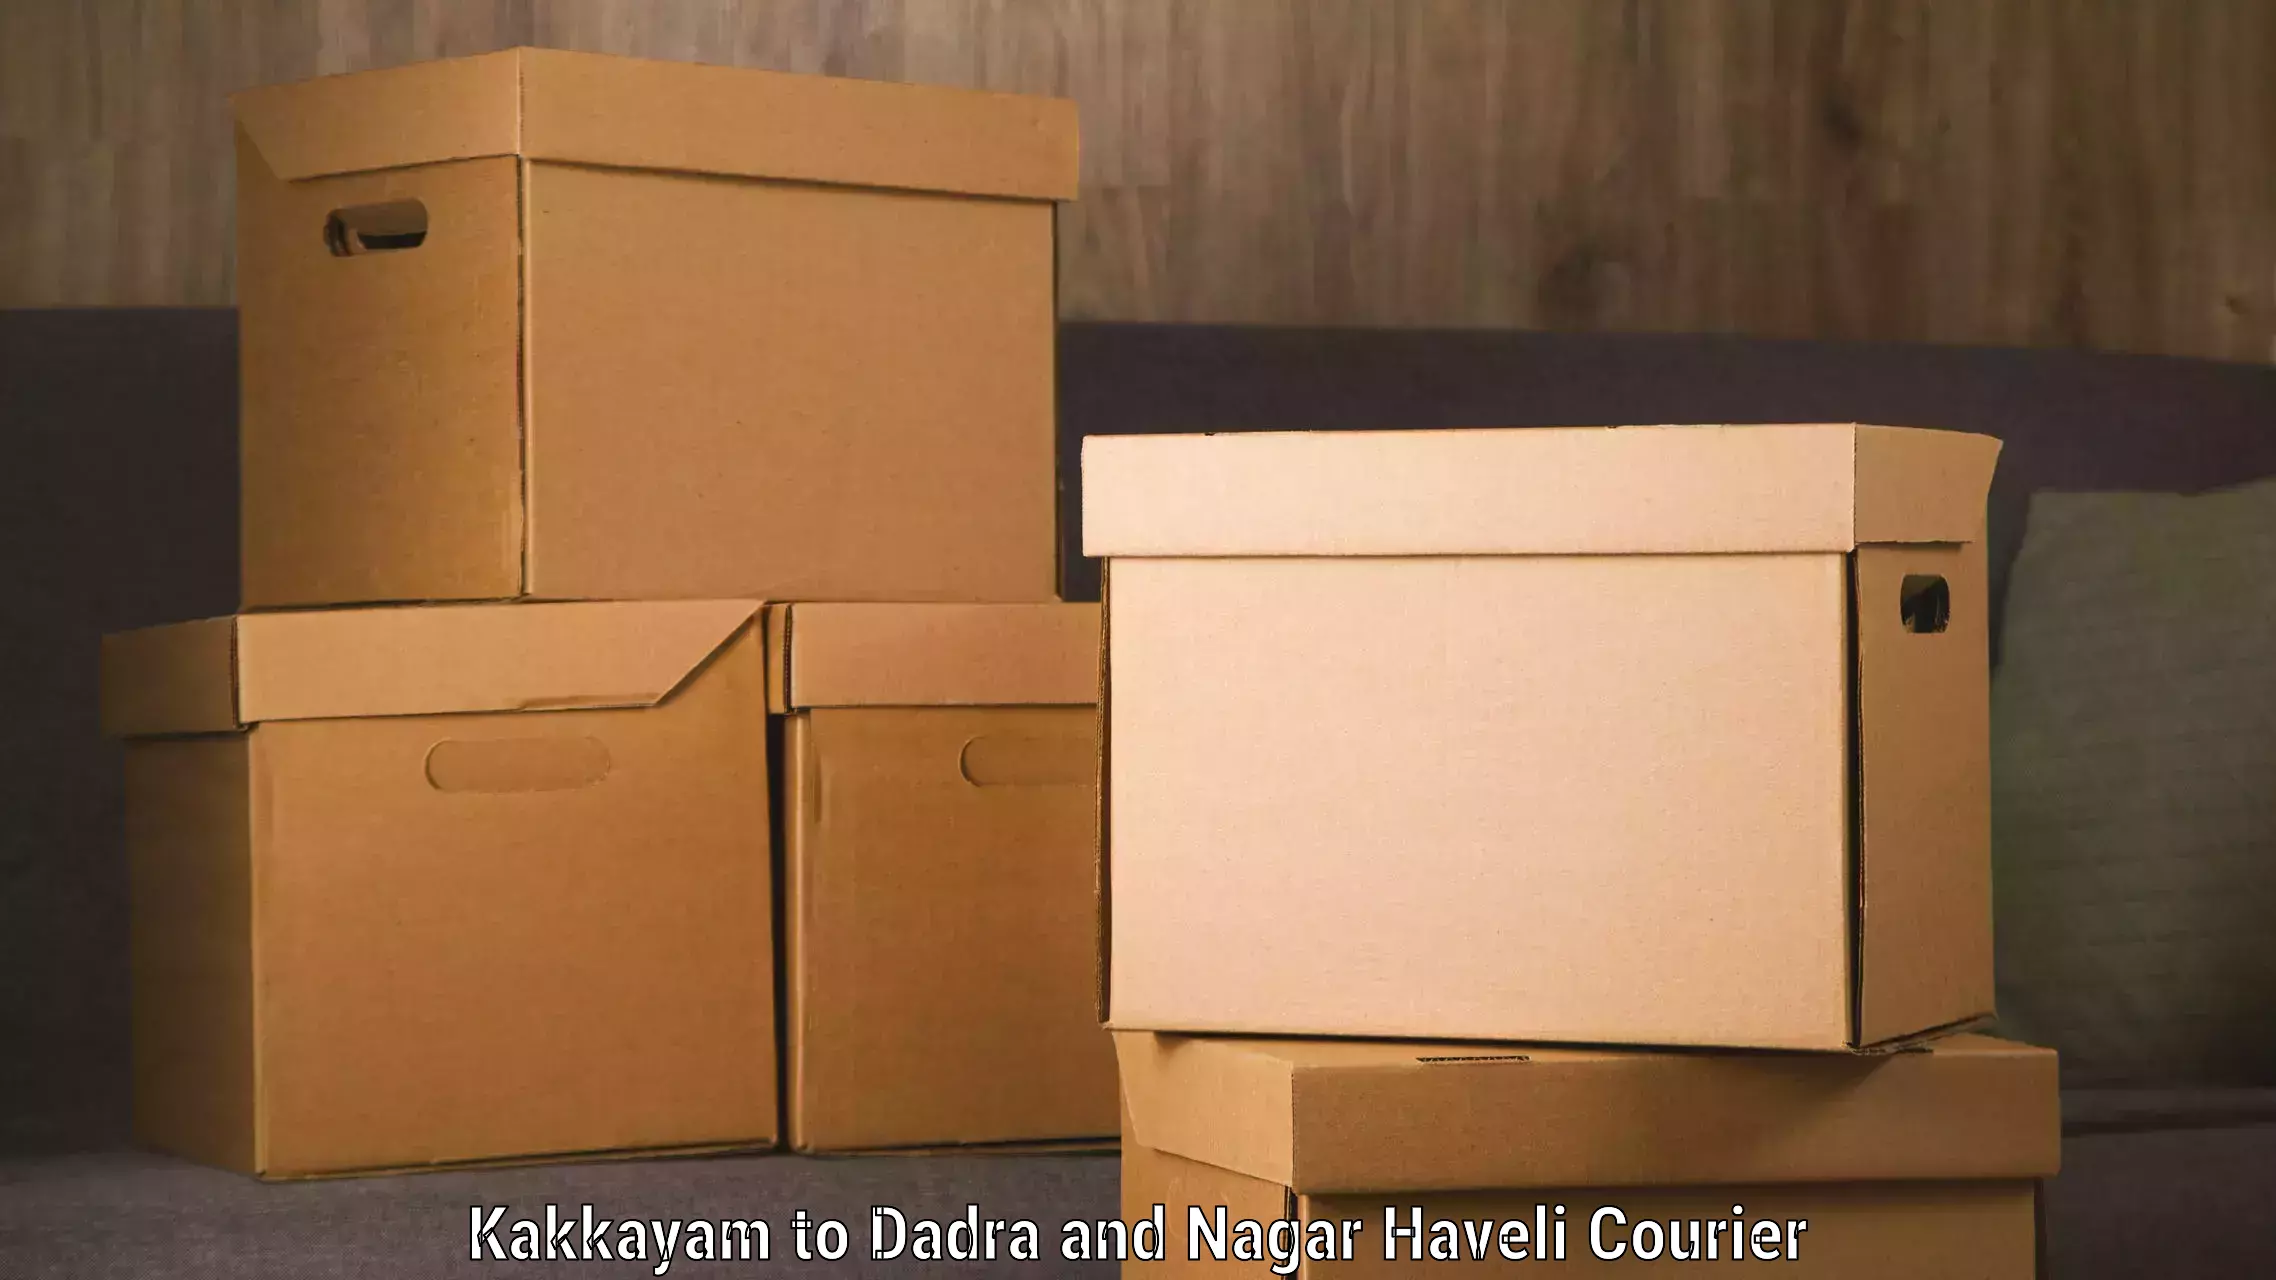 Advanced shipping network Kakkayam to Dadra and Nagar Haveli